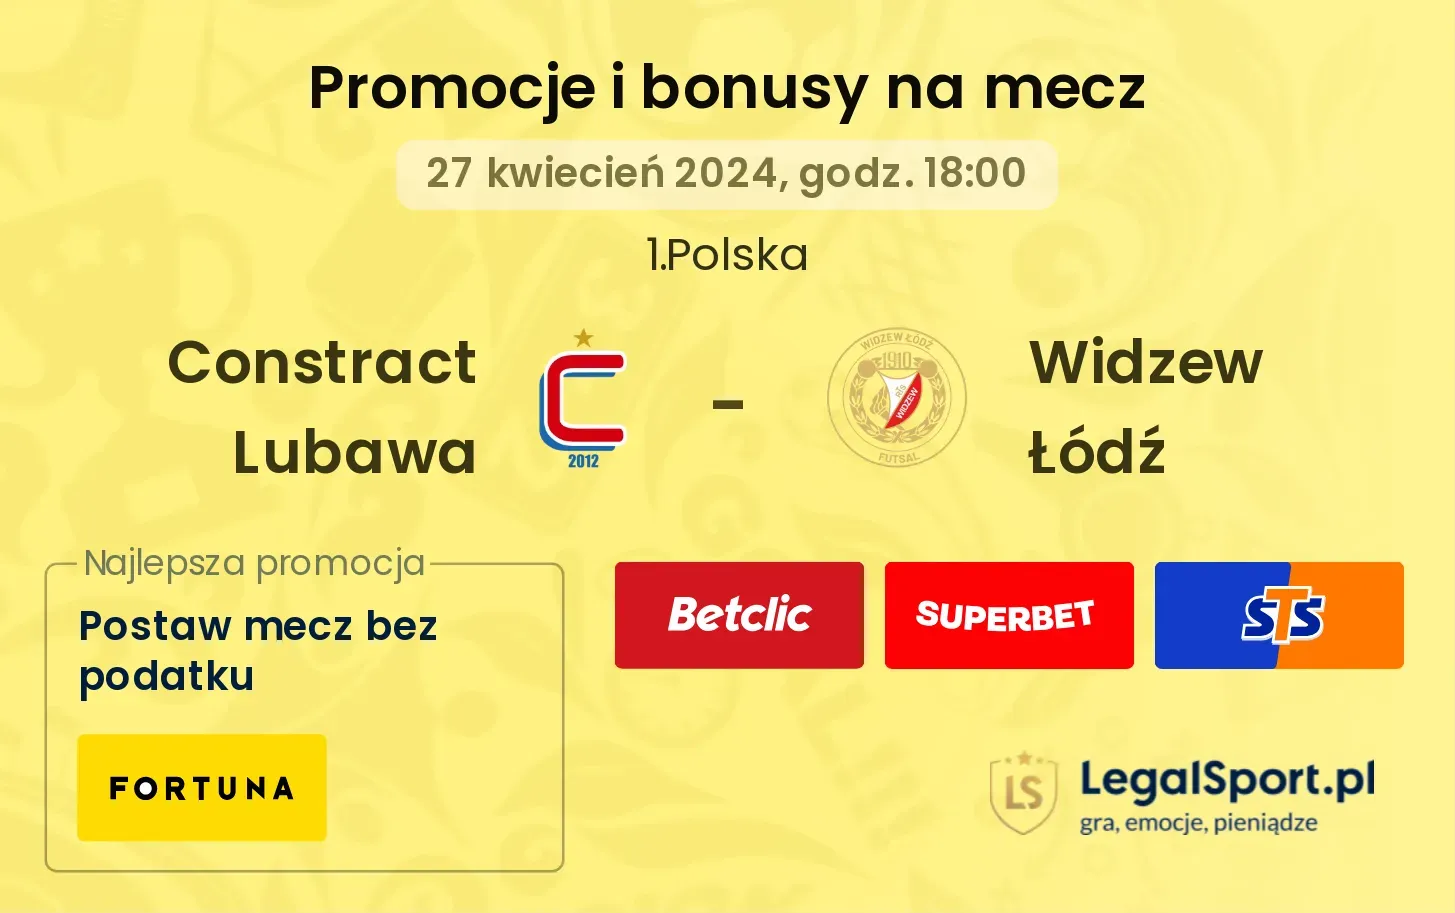 Constract Lubawa - Widzew Łódź promocje bonusy na mecz